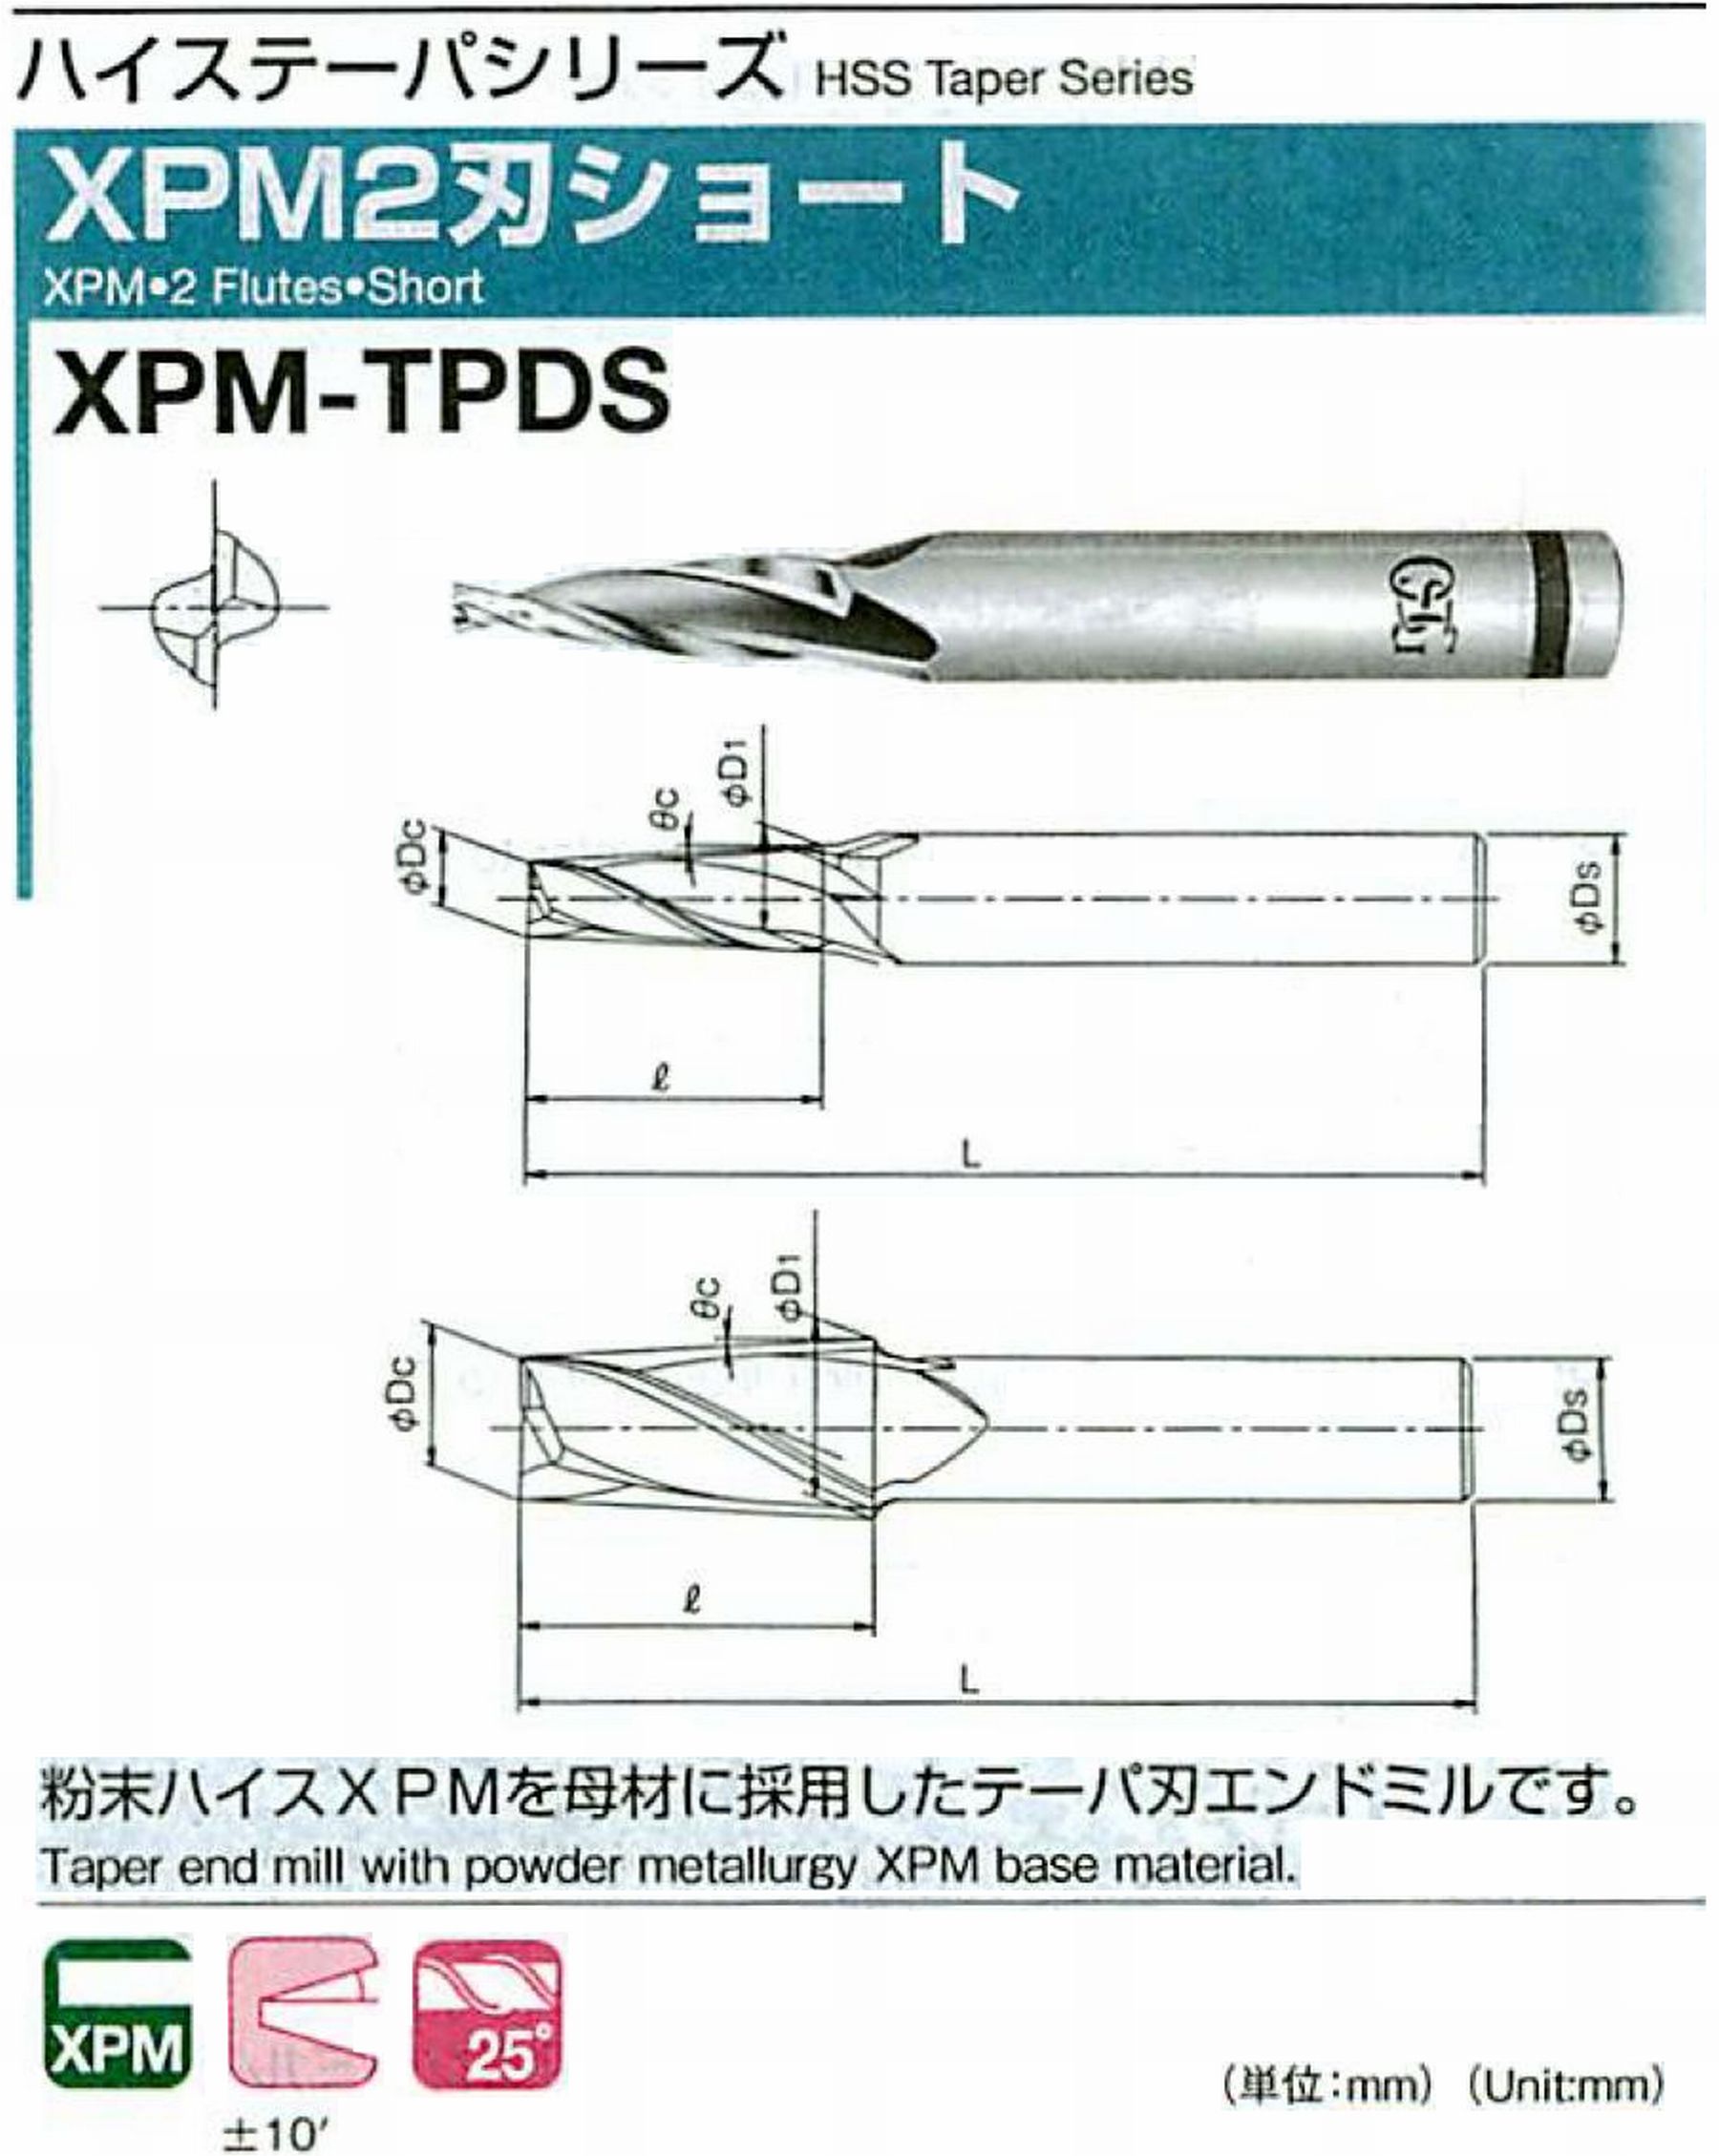 オーエスジー/OSG XPM2刃ショート XPM-TPDS 外径×刃部テーパ半角2×2° 全長62 刃長18 シャンク径6mm 大端径3.26